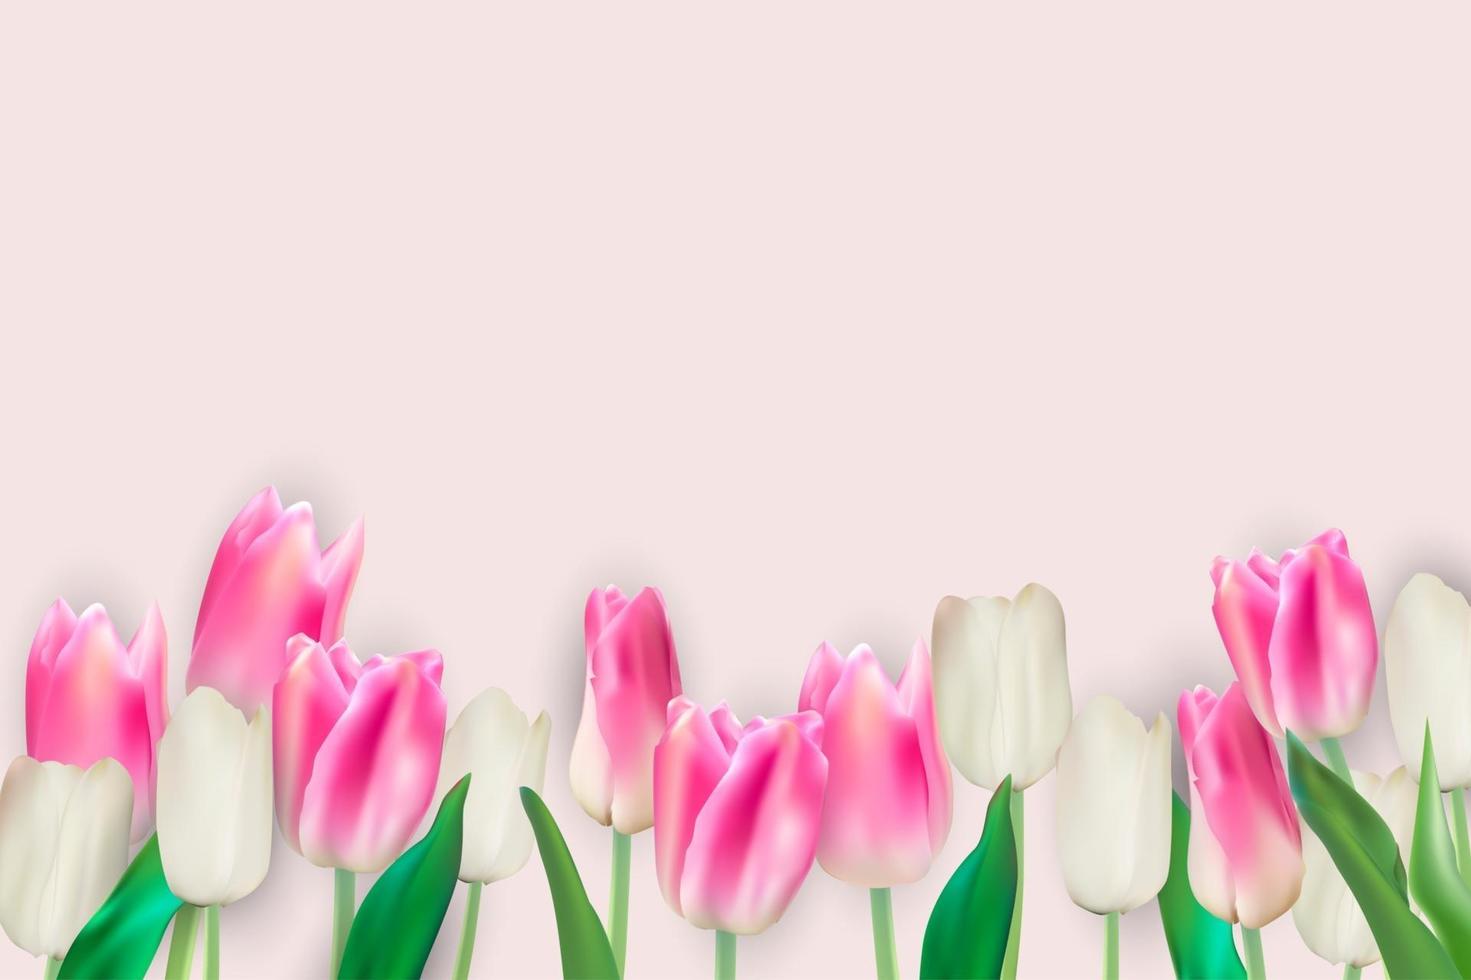 realistische vectorillustratie kleurrijke tulpen achtergrond vector